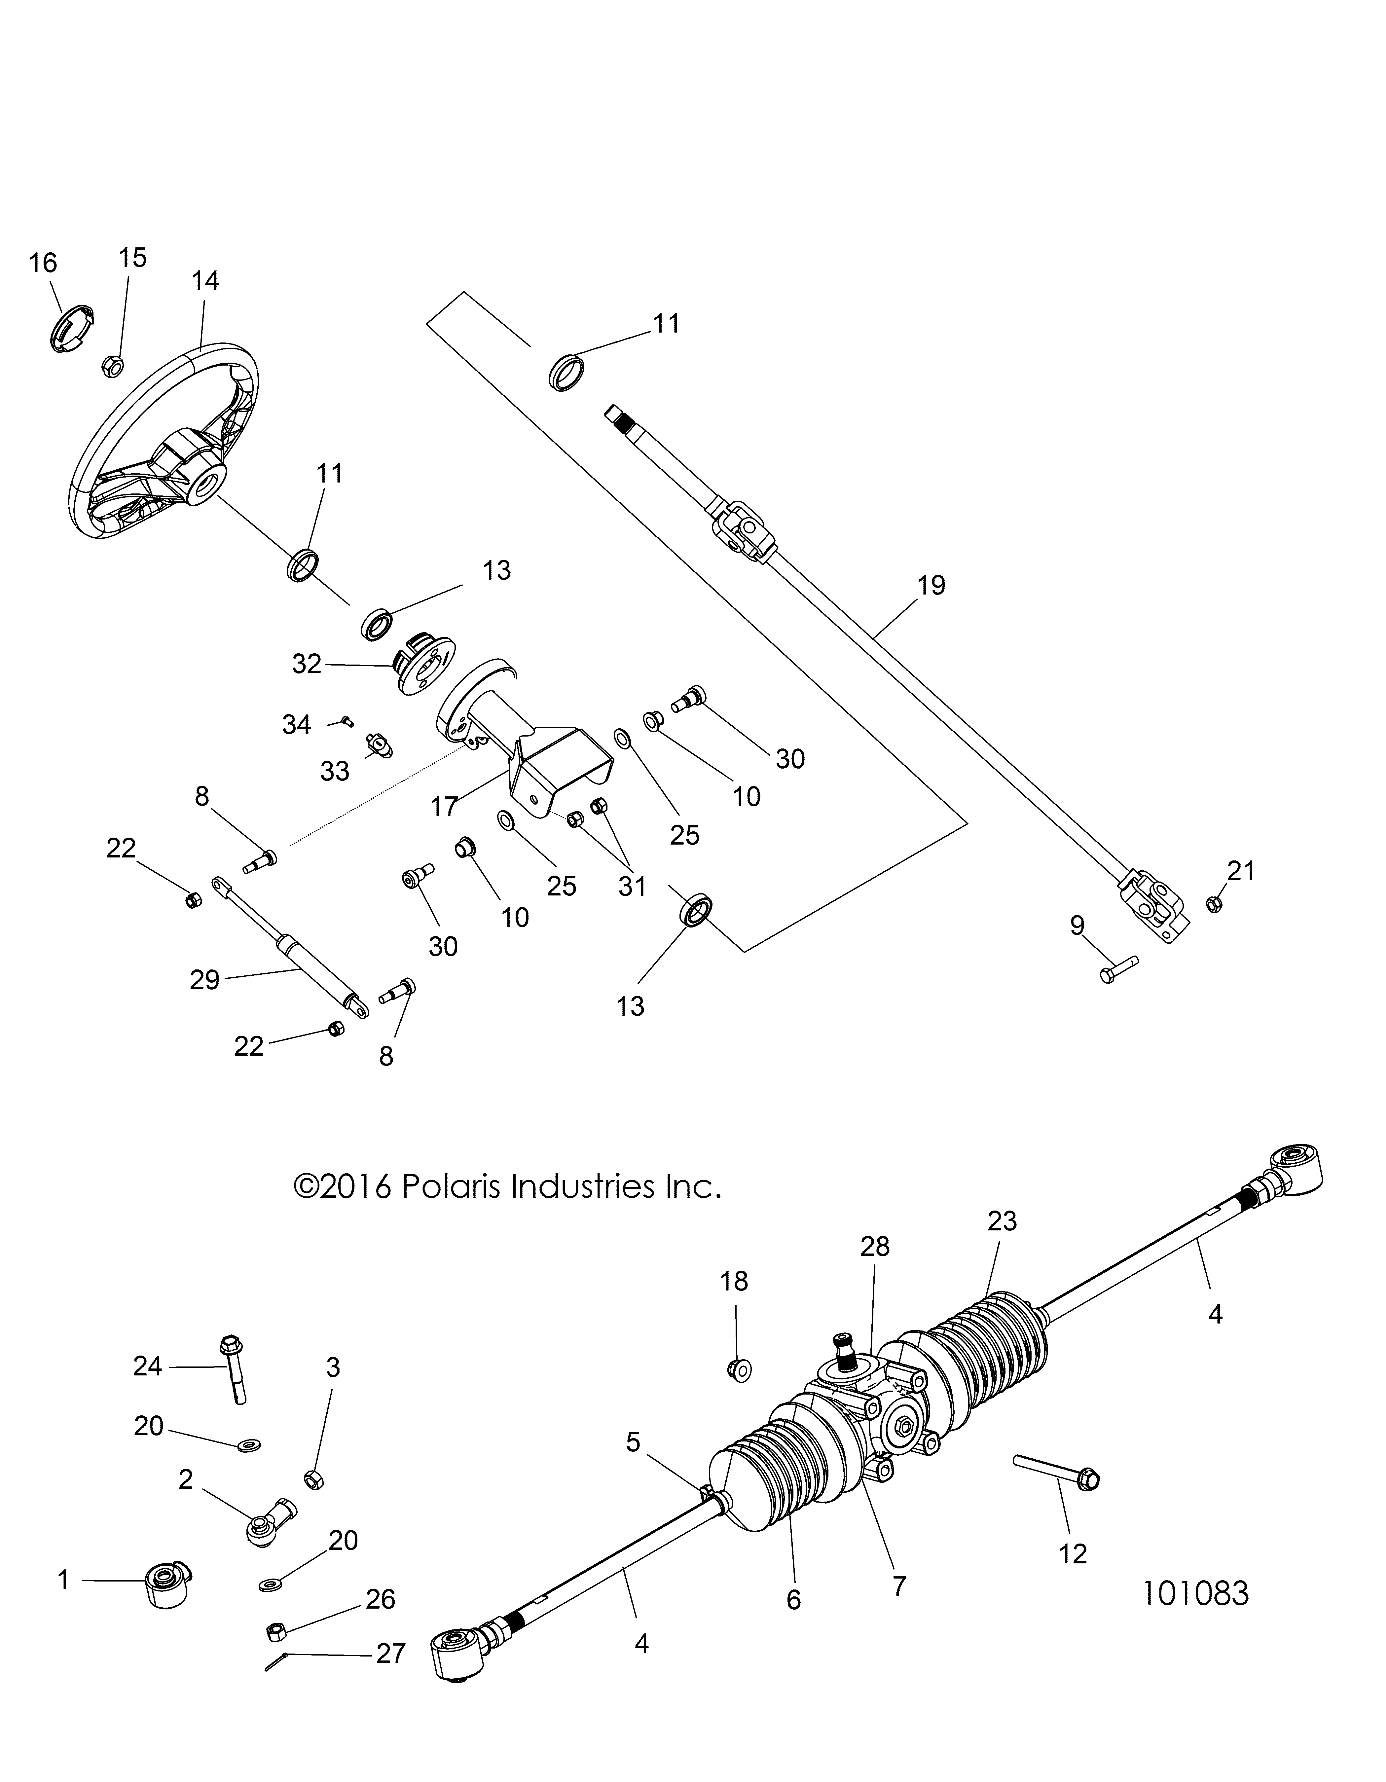 Foto diagrama Polaris que contem a peça 7082045